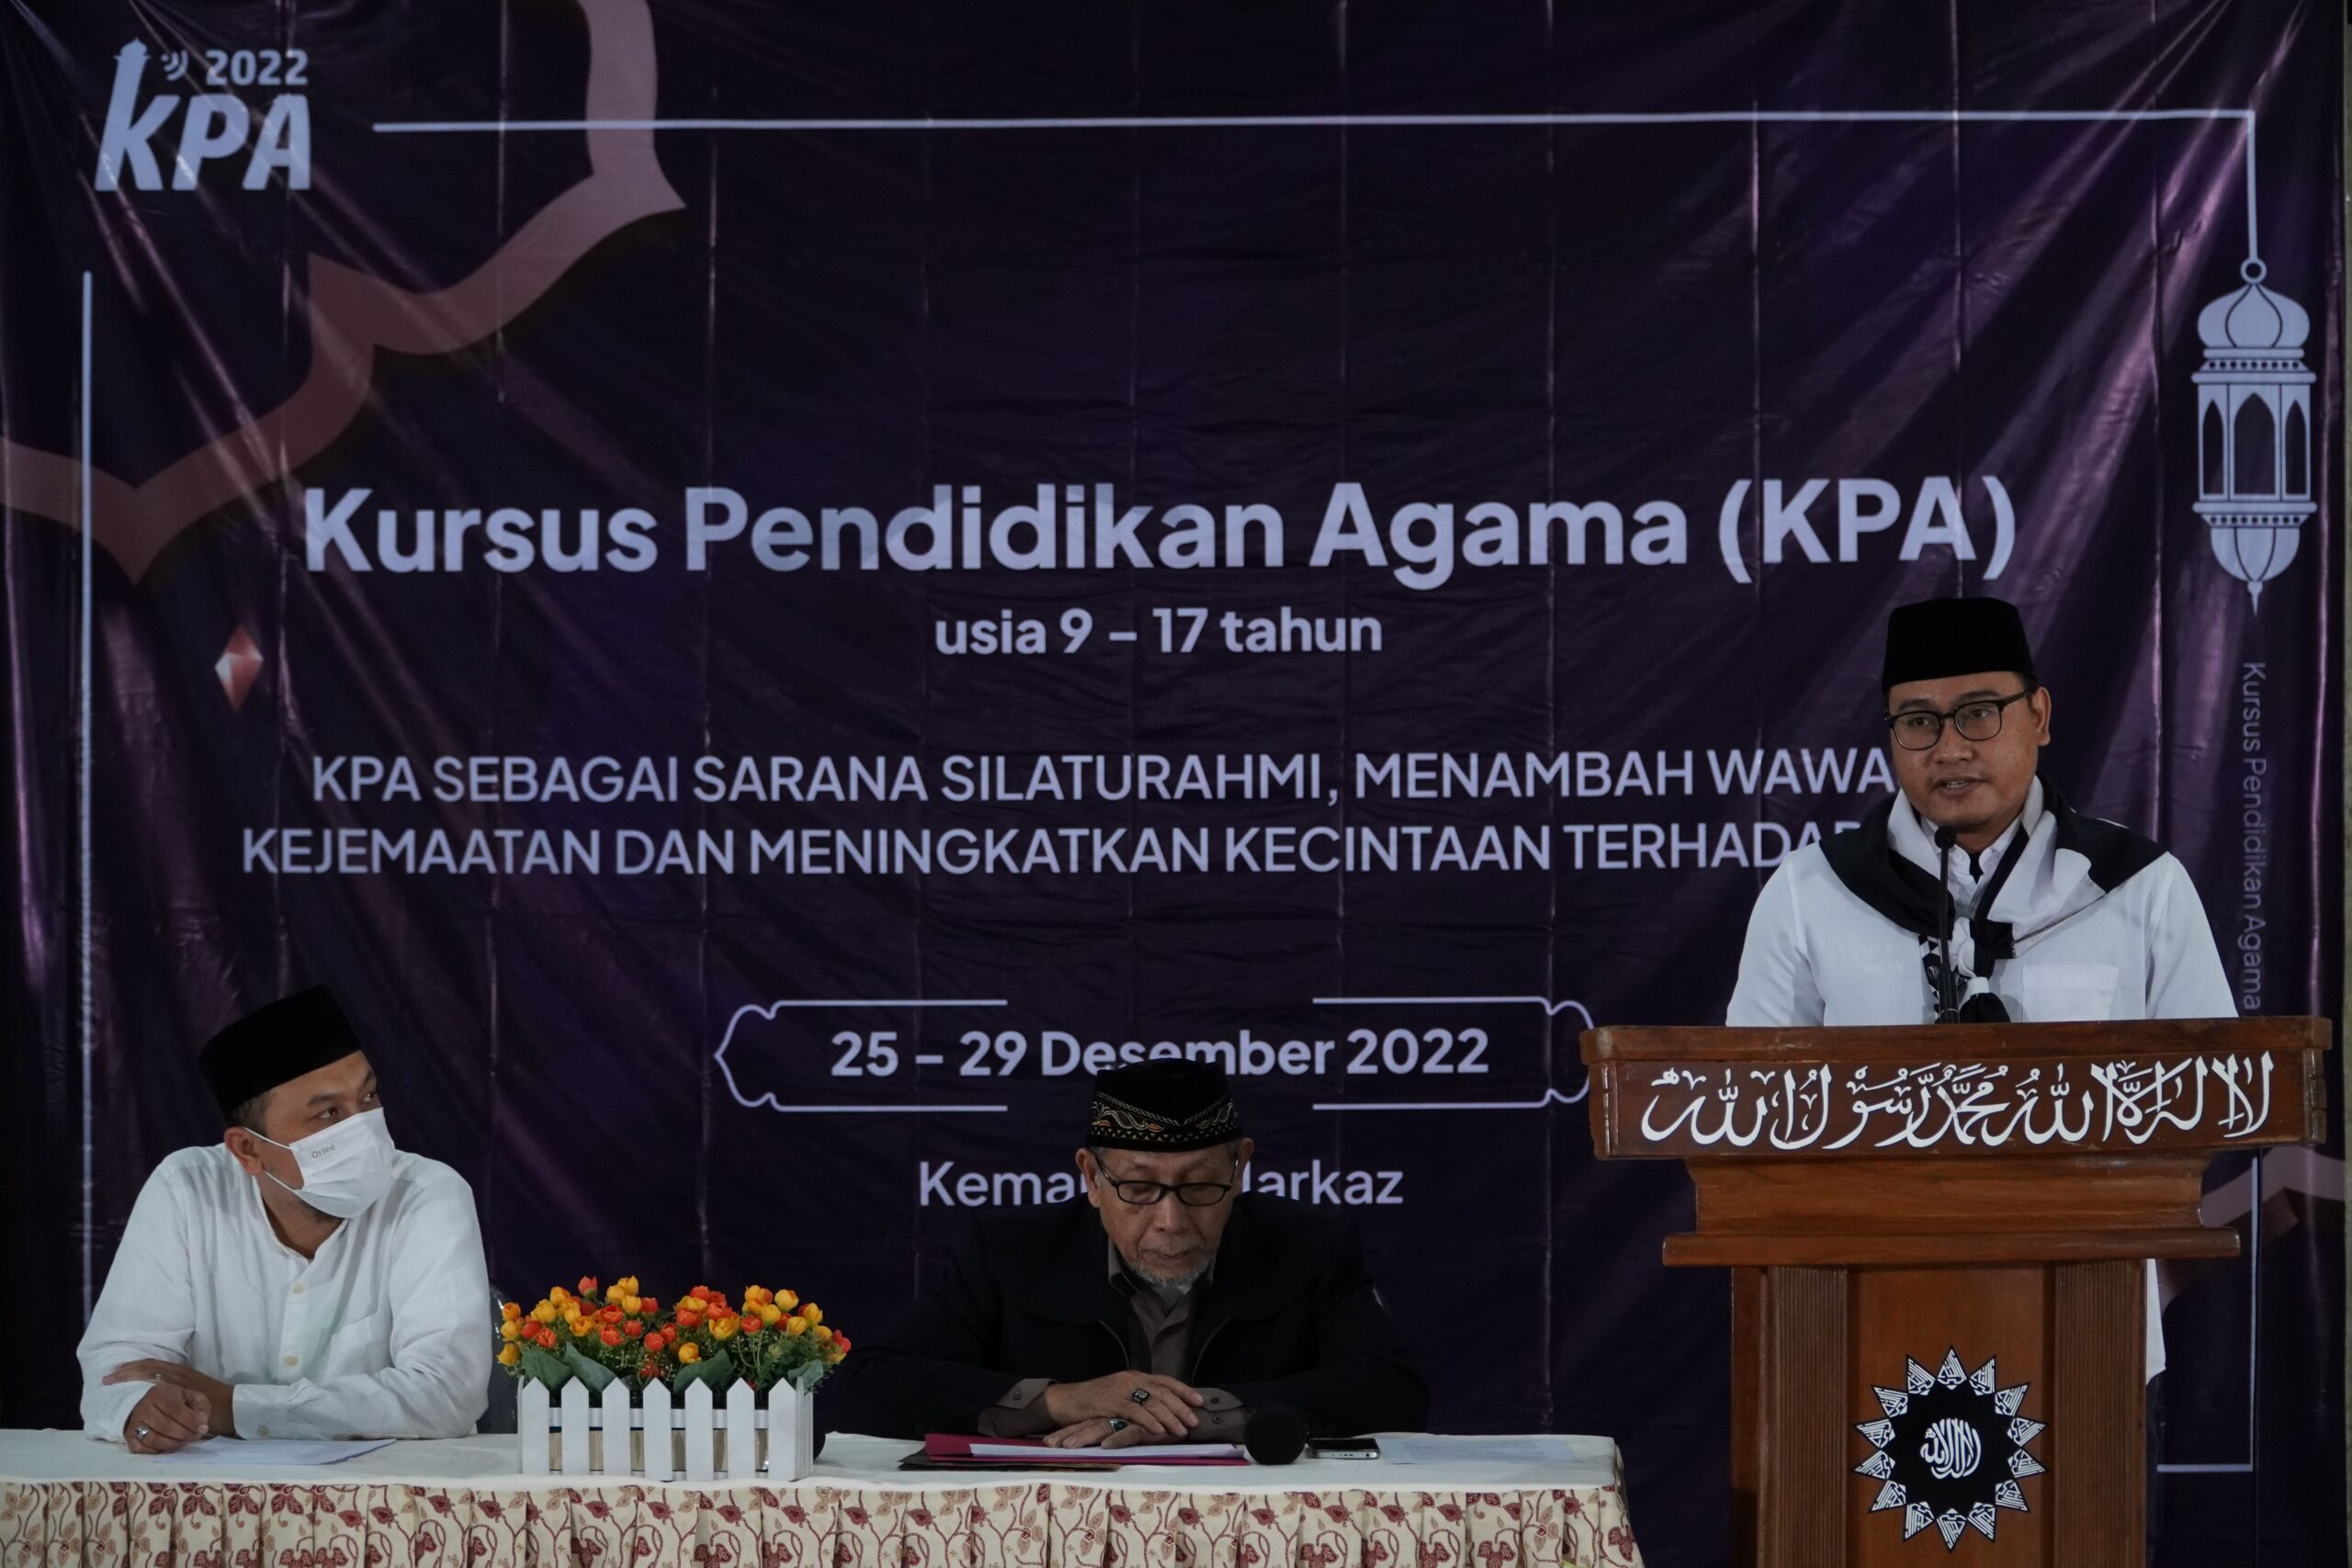 Ketua Pelaksana Nasional Kursus Pendidikan Agama (KPA) Nasional 2022, Saifur Rahman tengah melaporkan jumlah.peserta sementara.